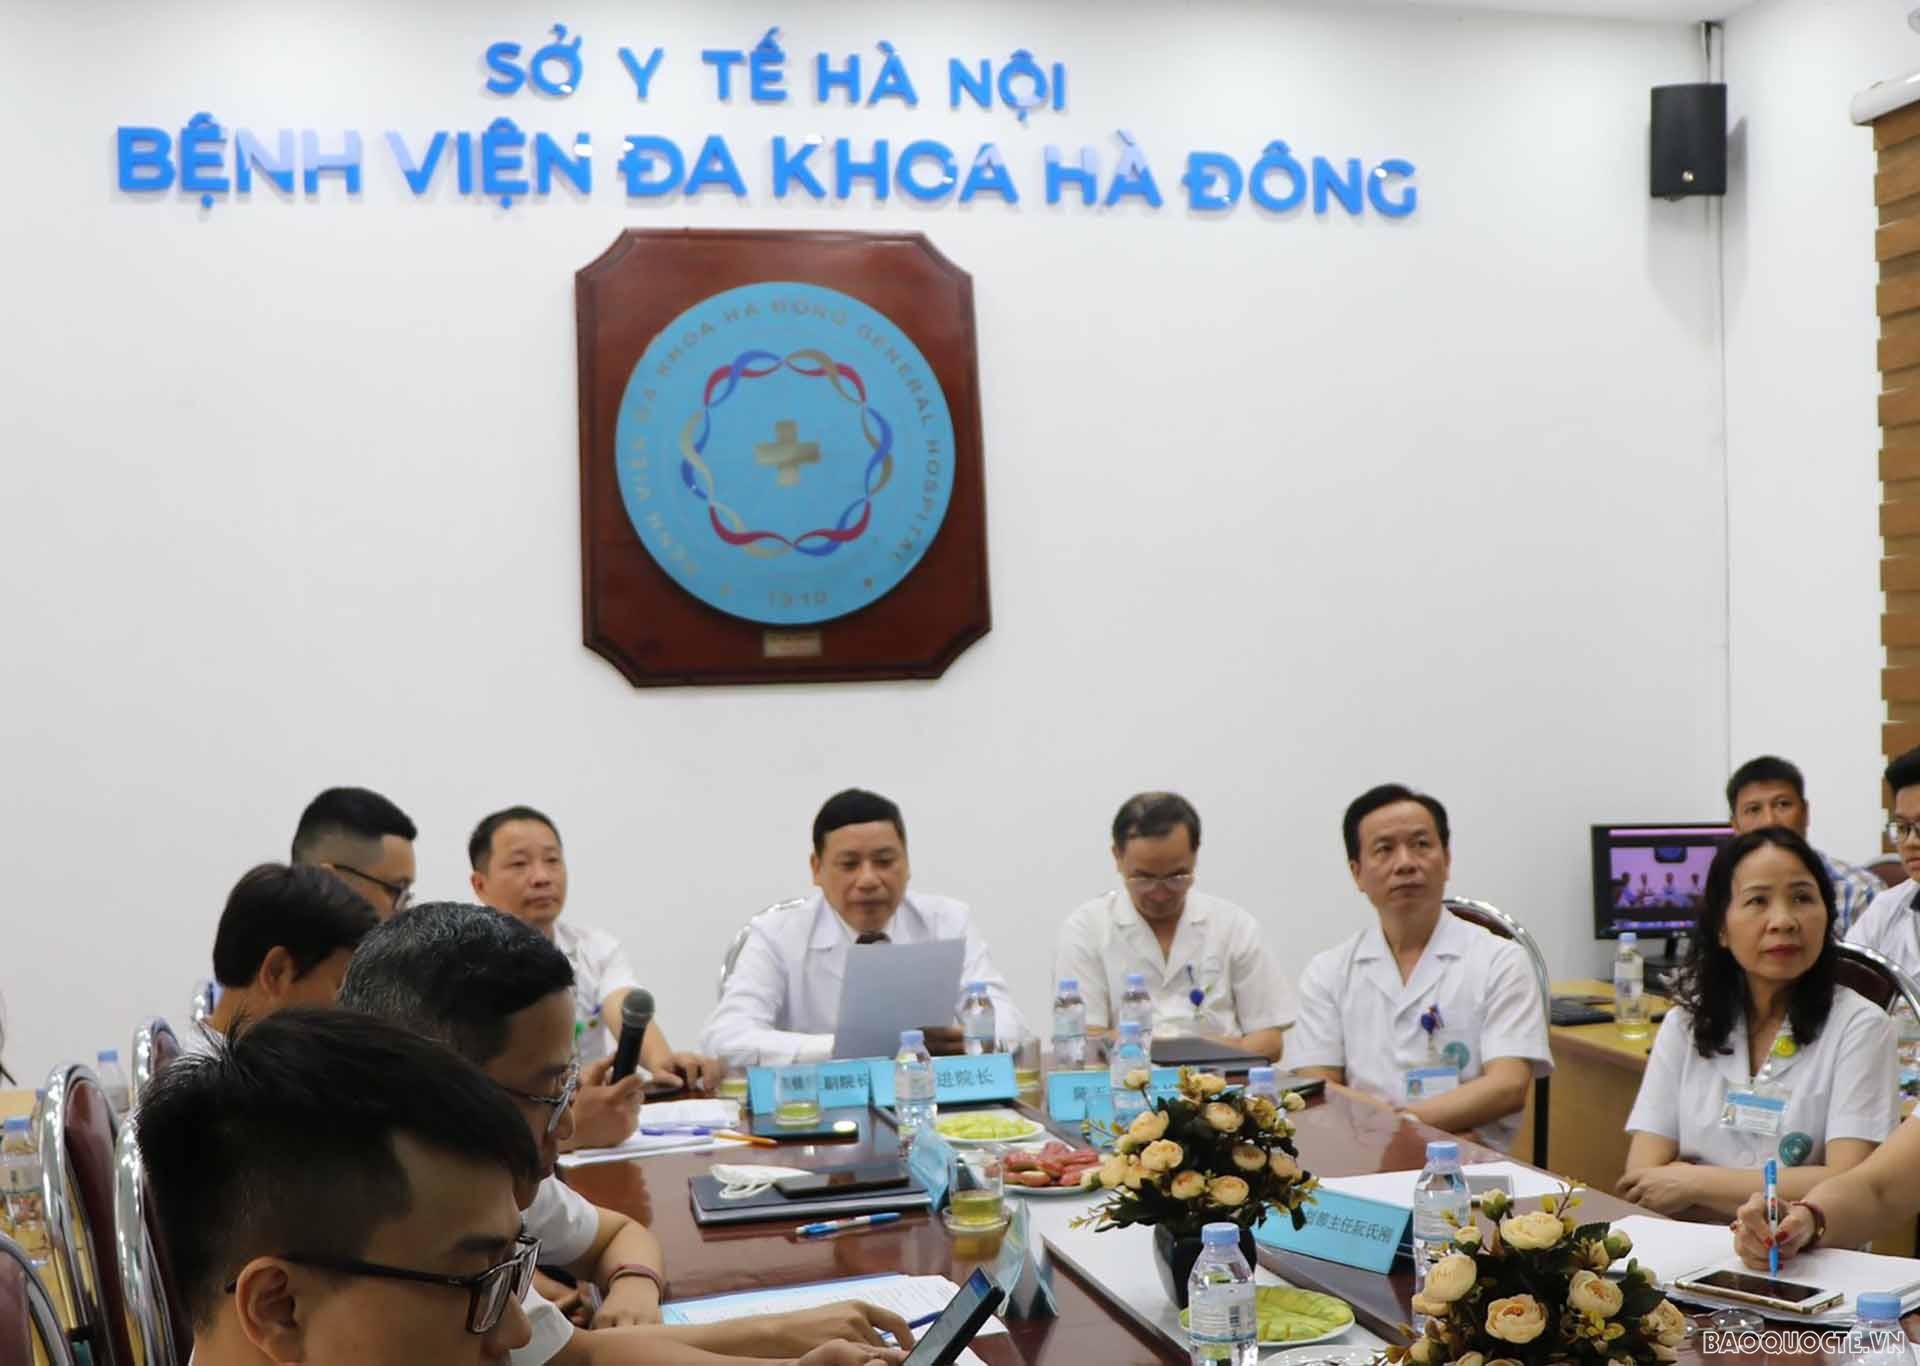 Tổng Lãnh sự quán Việt Nam tại Nam Ninh phối hợp cùng Bệnh viện Đa khoa Hà Đông và Bệnh viện Đại học Y Quảng Tây tổ chức Gặp gỡ hữu nghị trực tuyến về hợp tác y tế, diễn ra tại điểm cầu Hà Nội và Nam Ninh.